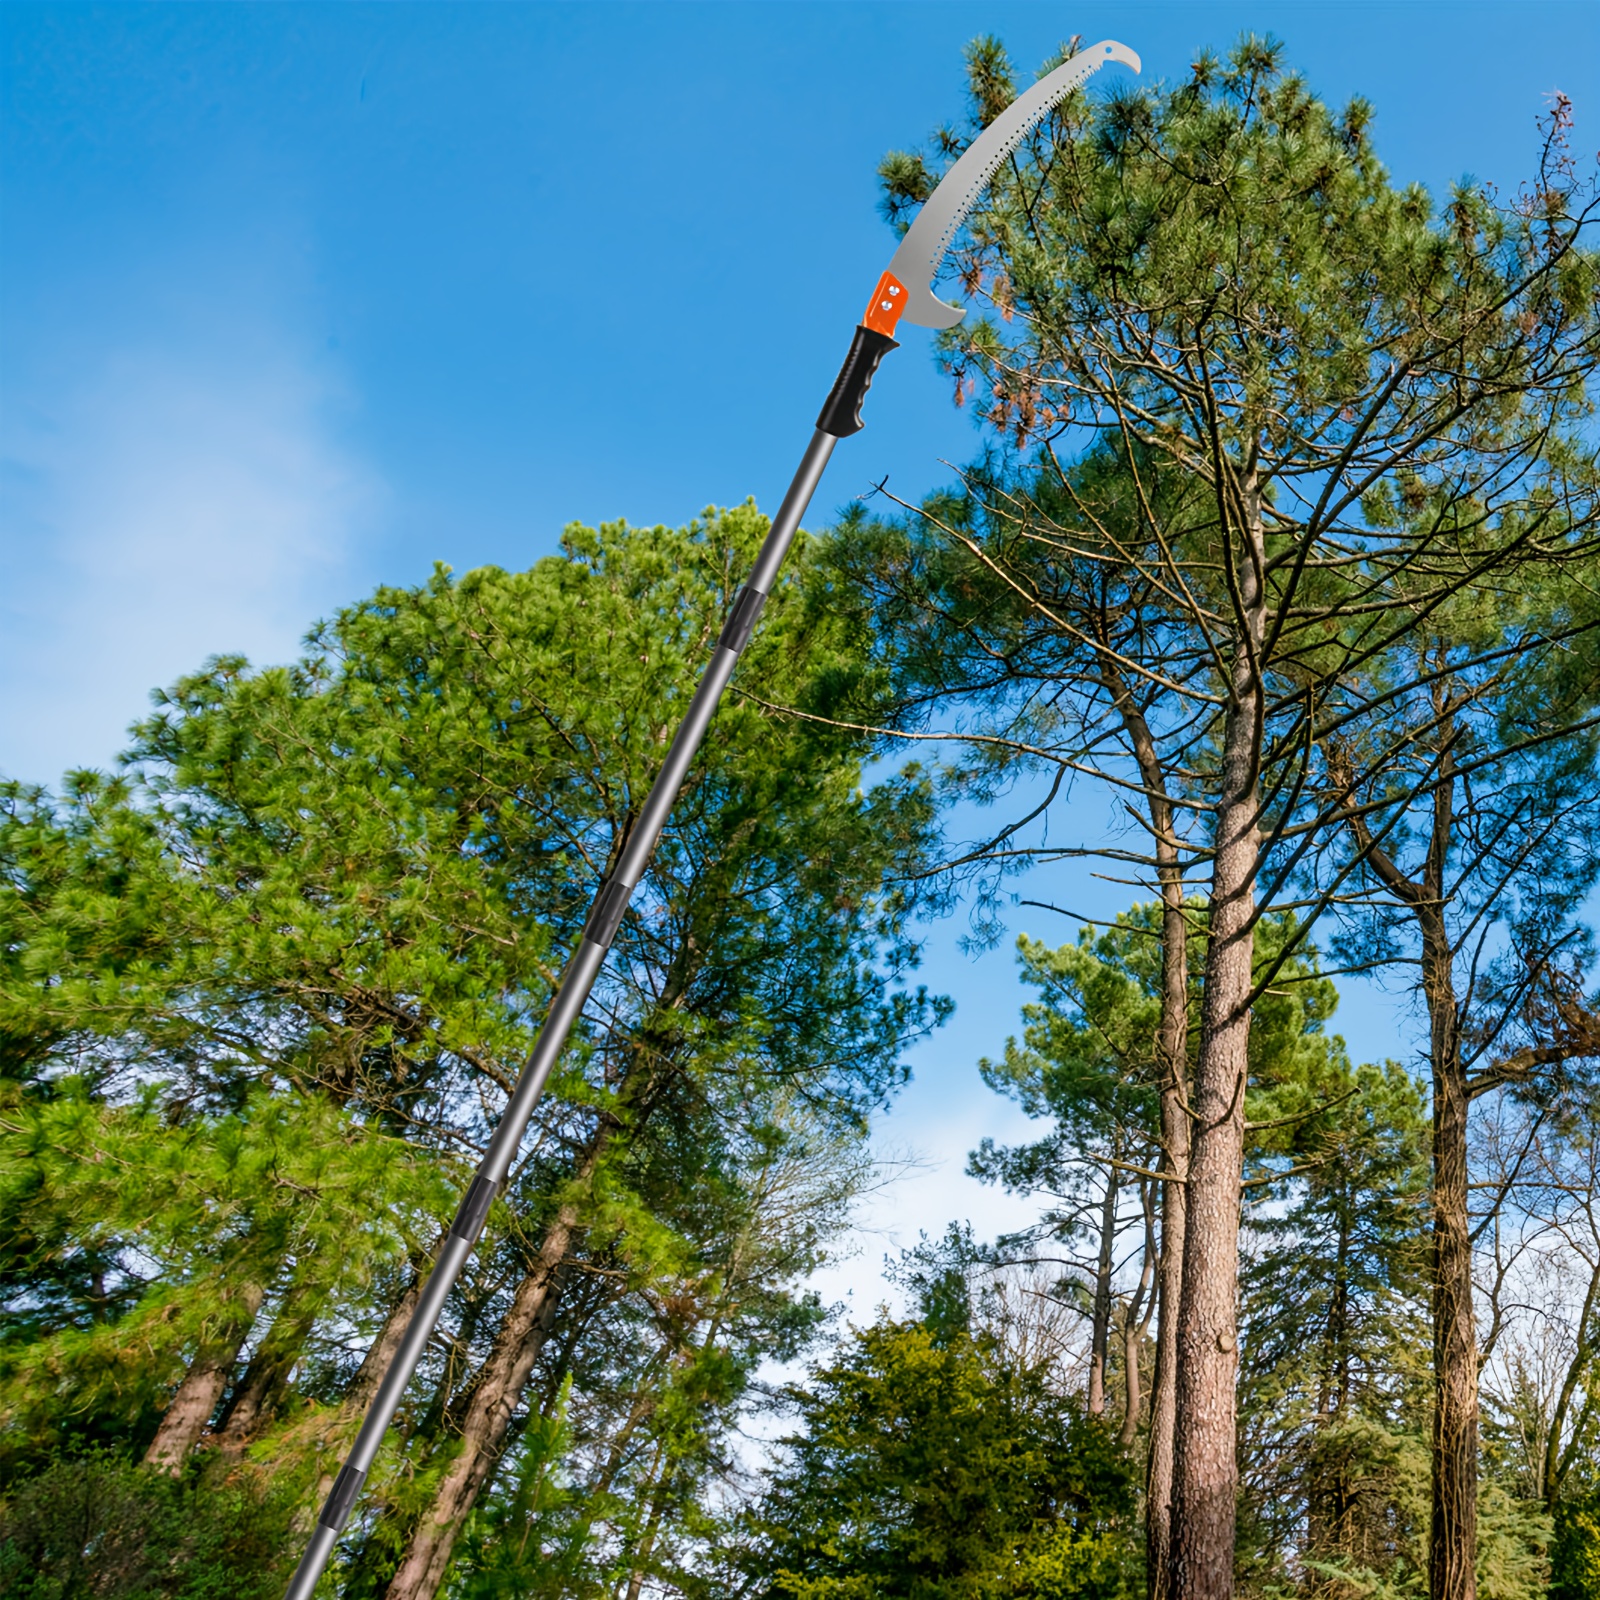  Podadora de altura cortadora de árboles arbustos con guillotina  portátil, cobertura de motosierra de largo alcance 5 en 1 Ridgeyard 52cc  2-Stroke : Patio, Césped y Jardín